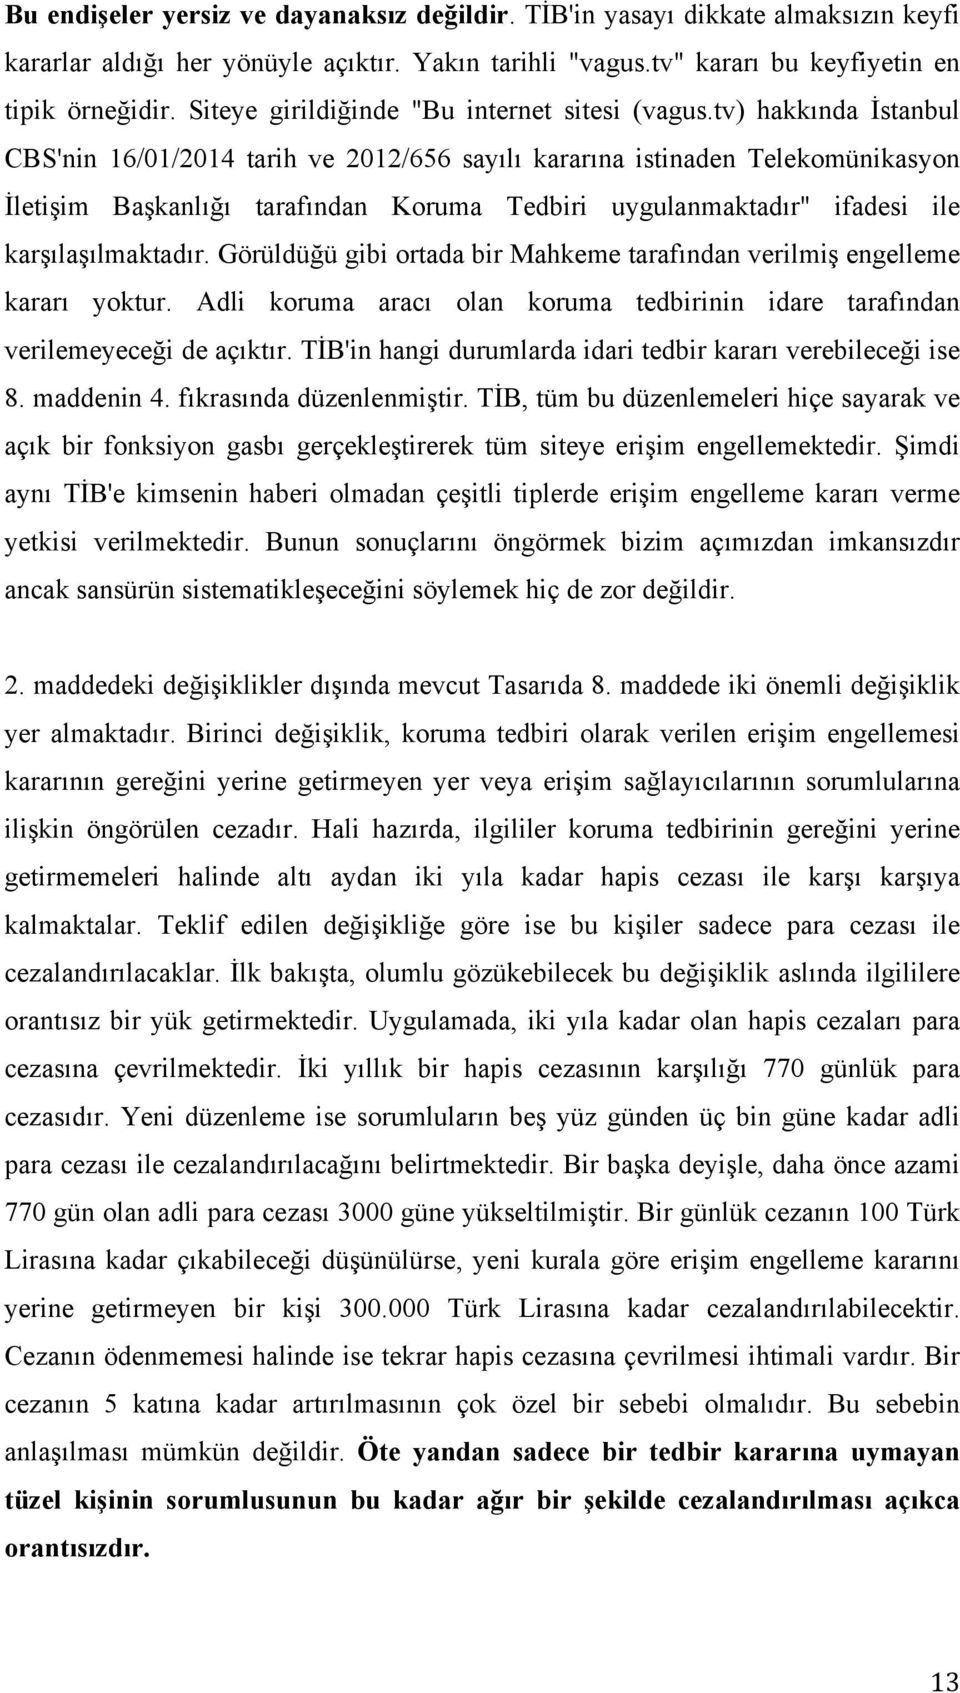 tv) hakkında İstanbul CBS'nin 16/01/2014 tarih ve 2012/656 sayılı kararına istinaden Telekomünikasyon İletişim Başkanlığı tarafından Koruma Tedbiri uygulanmaktadır" ifadesi ile karşılaşılmaktadır.